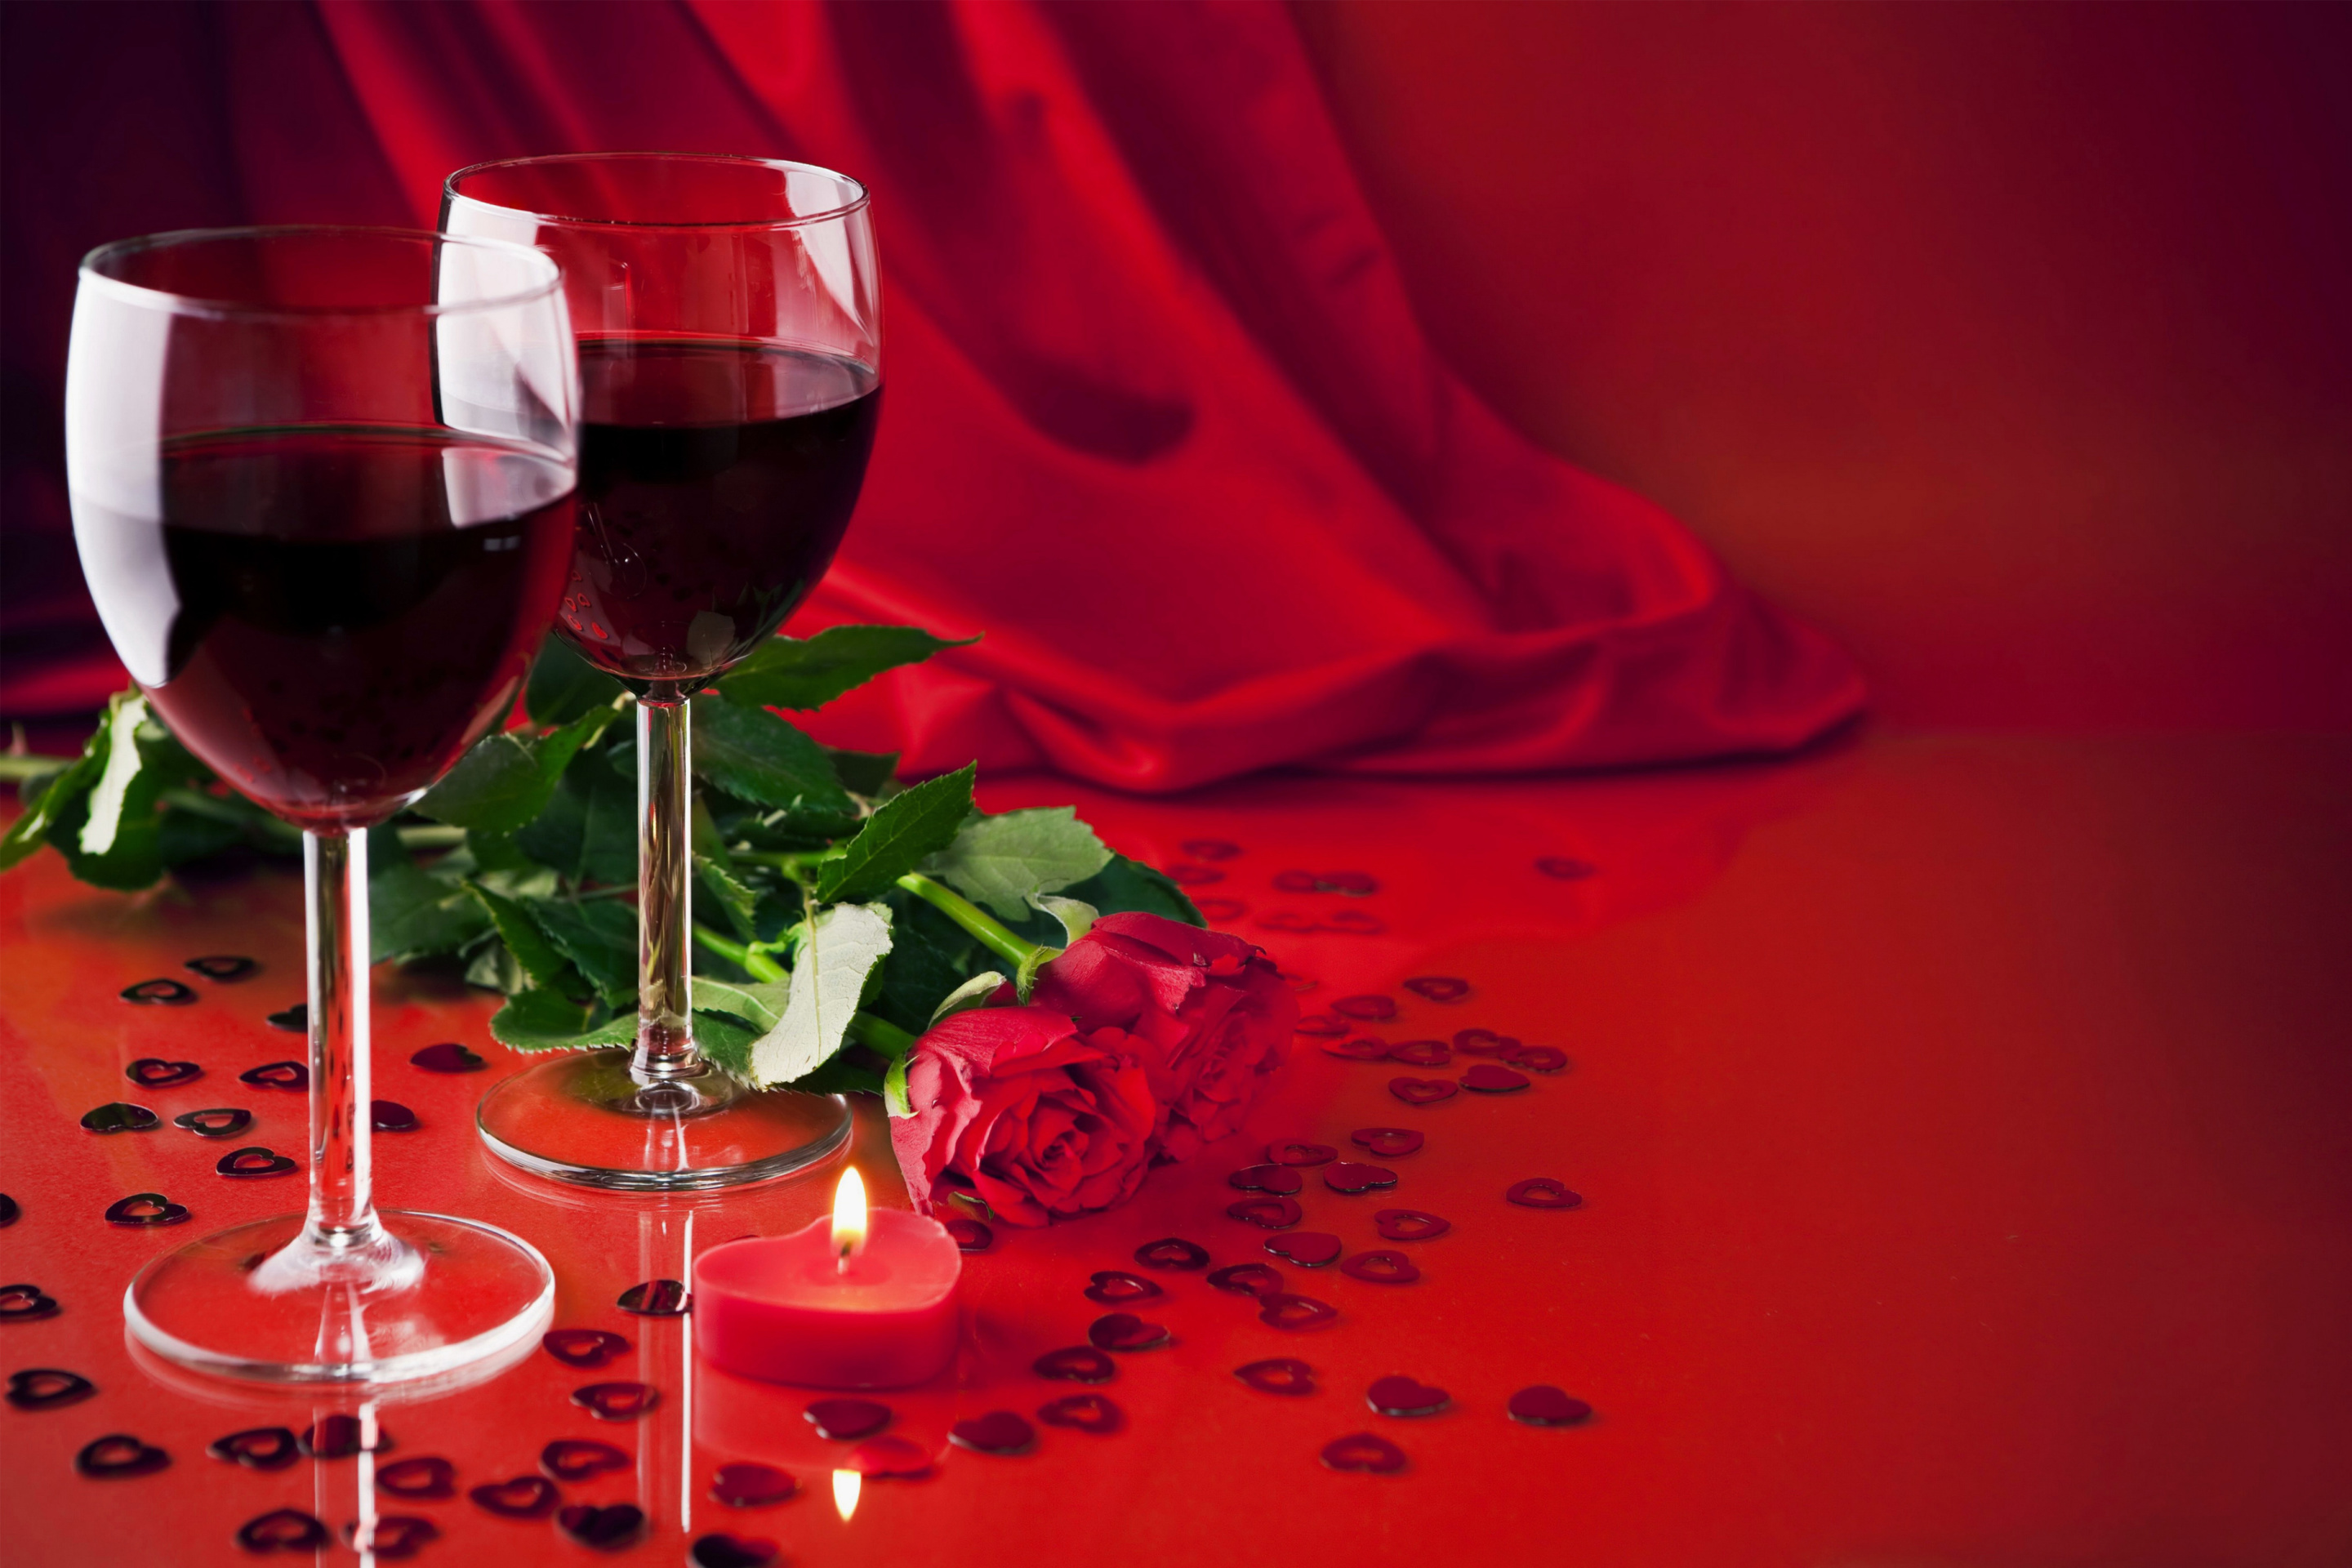 Обои Romantic with Wine 2880x1920